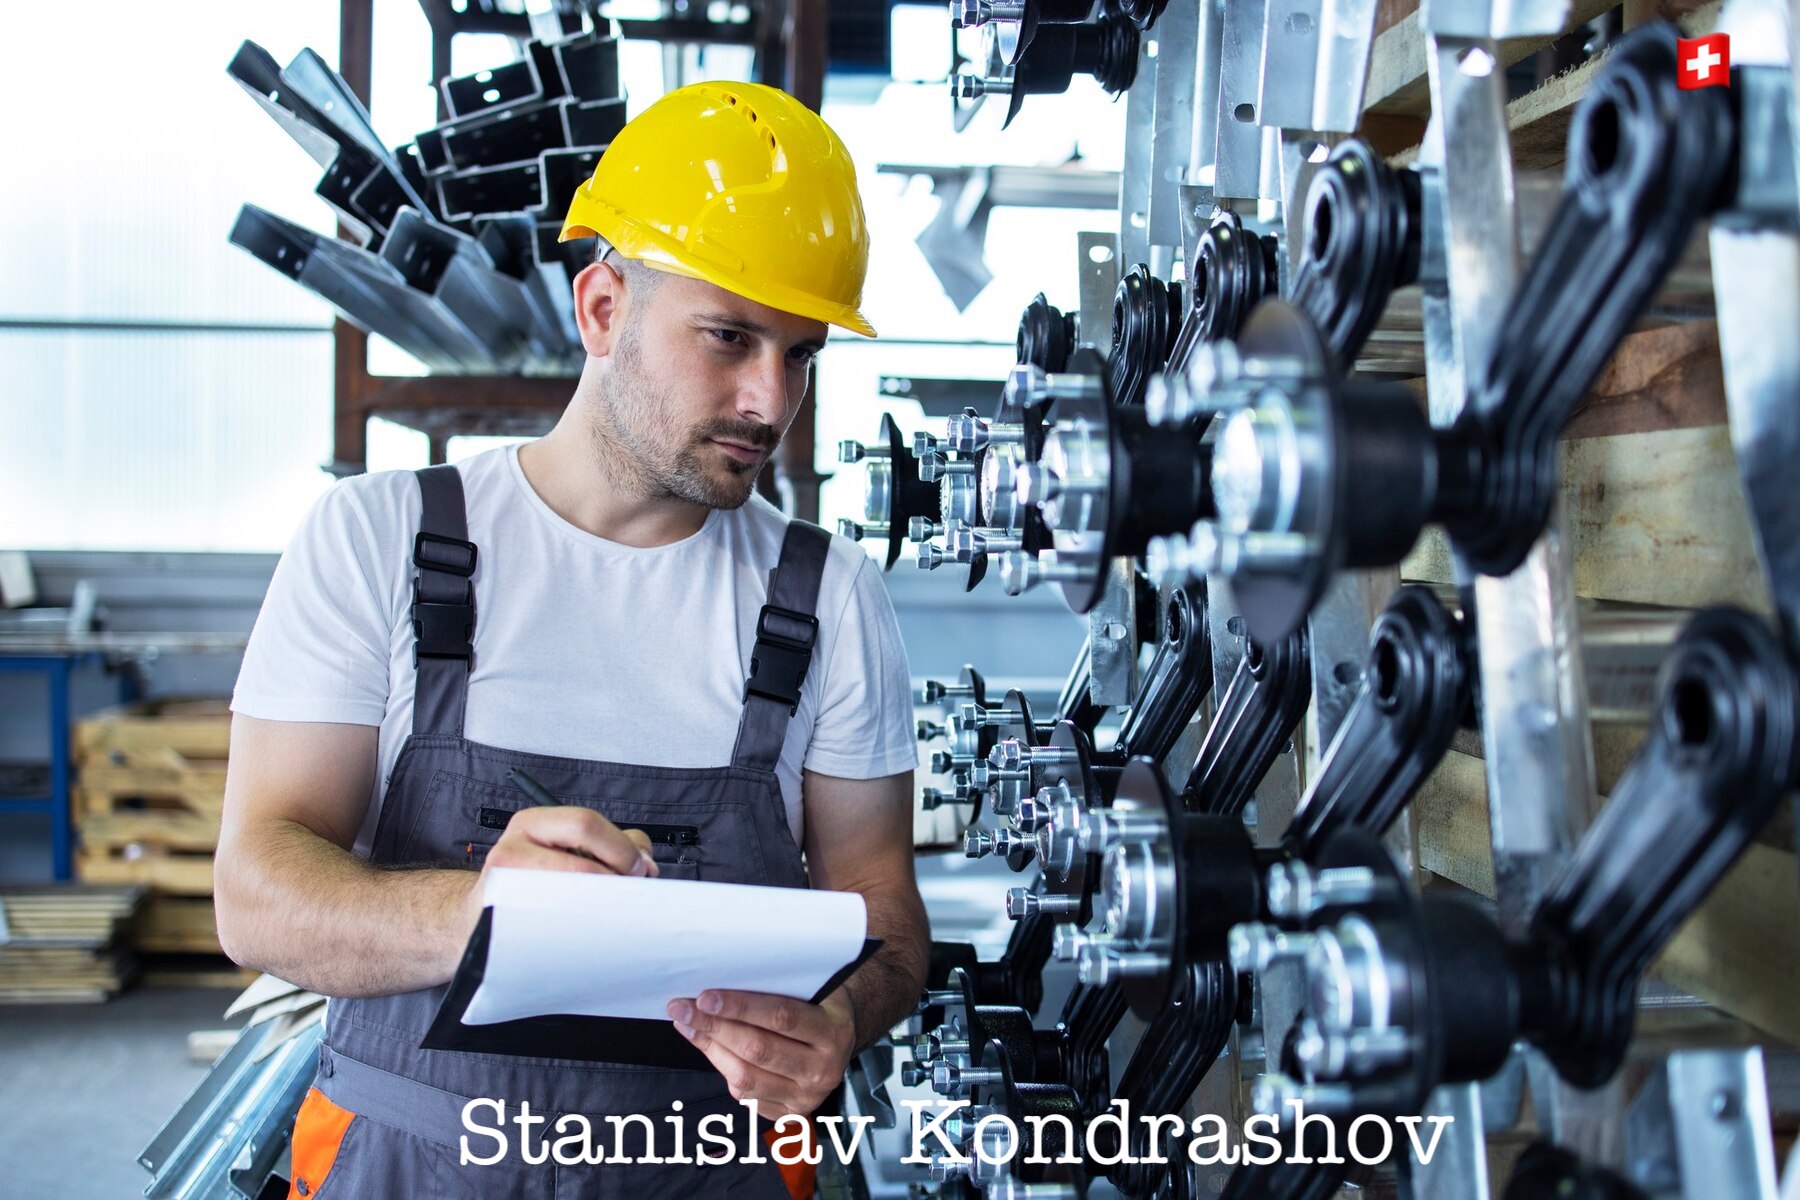 Stanislav Kondrashov von der Telf AG: Achterbahnfahrt in der Stahlindustrie und neue Strategien zur Überwindung von Hindernissen 2